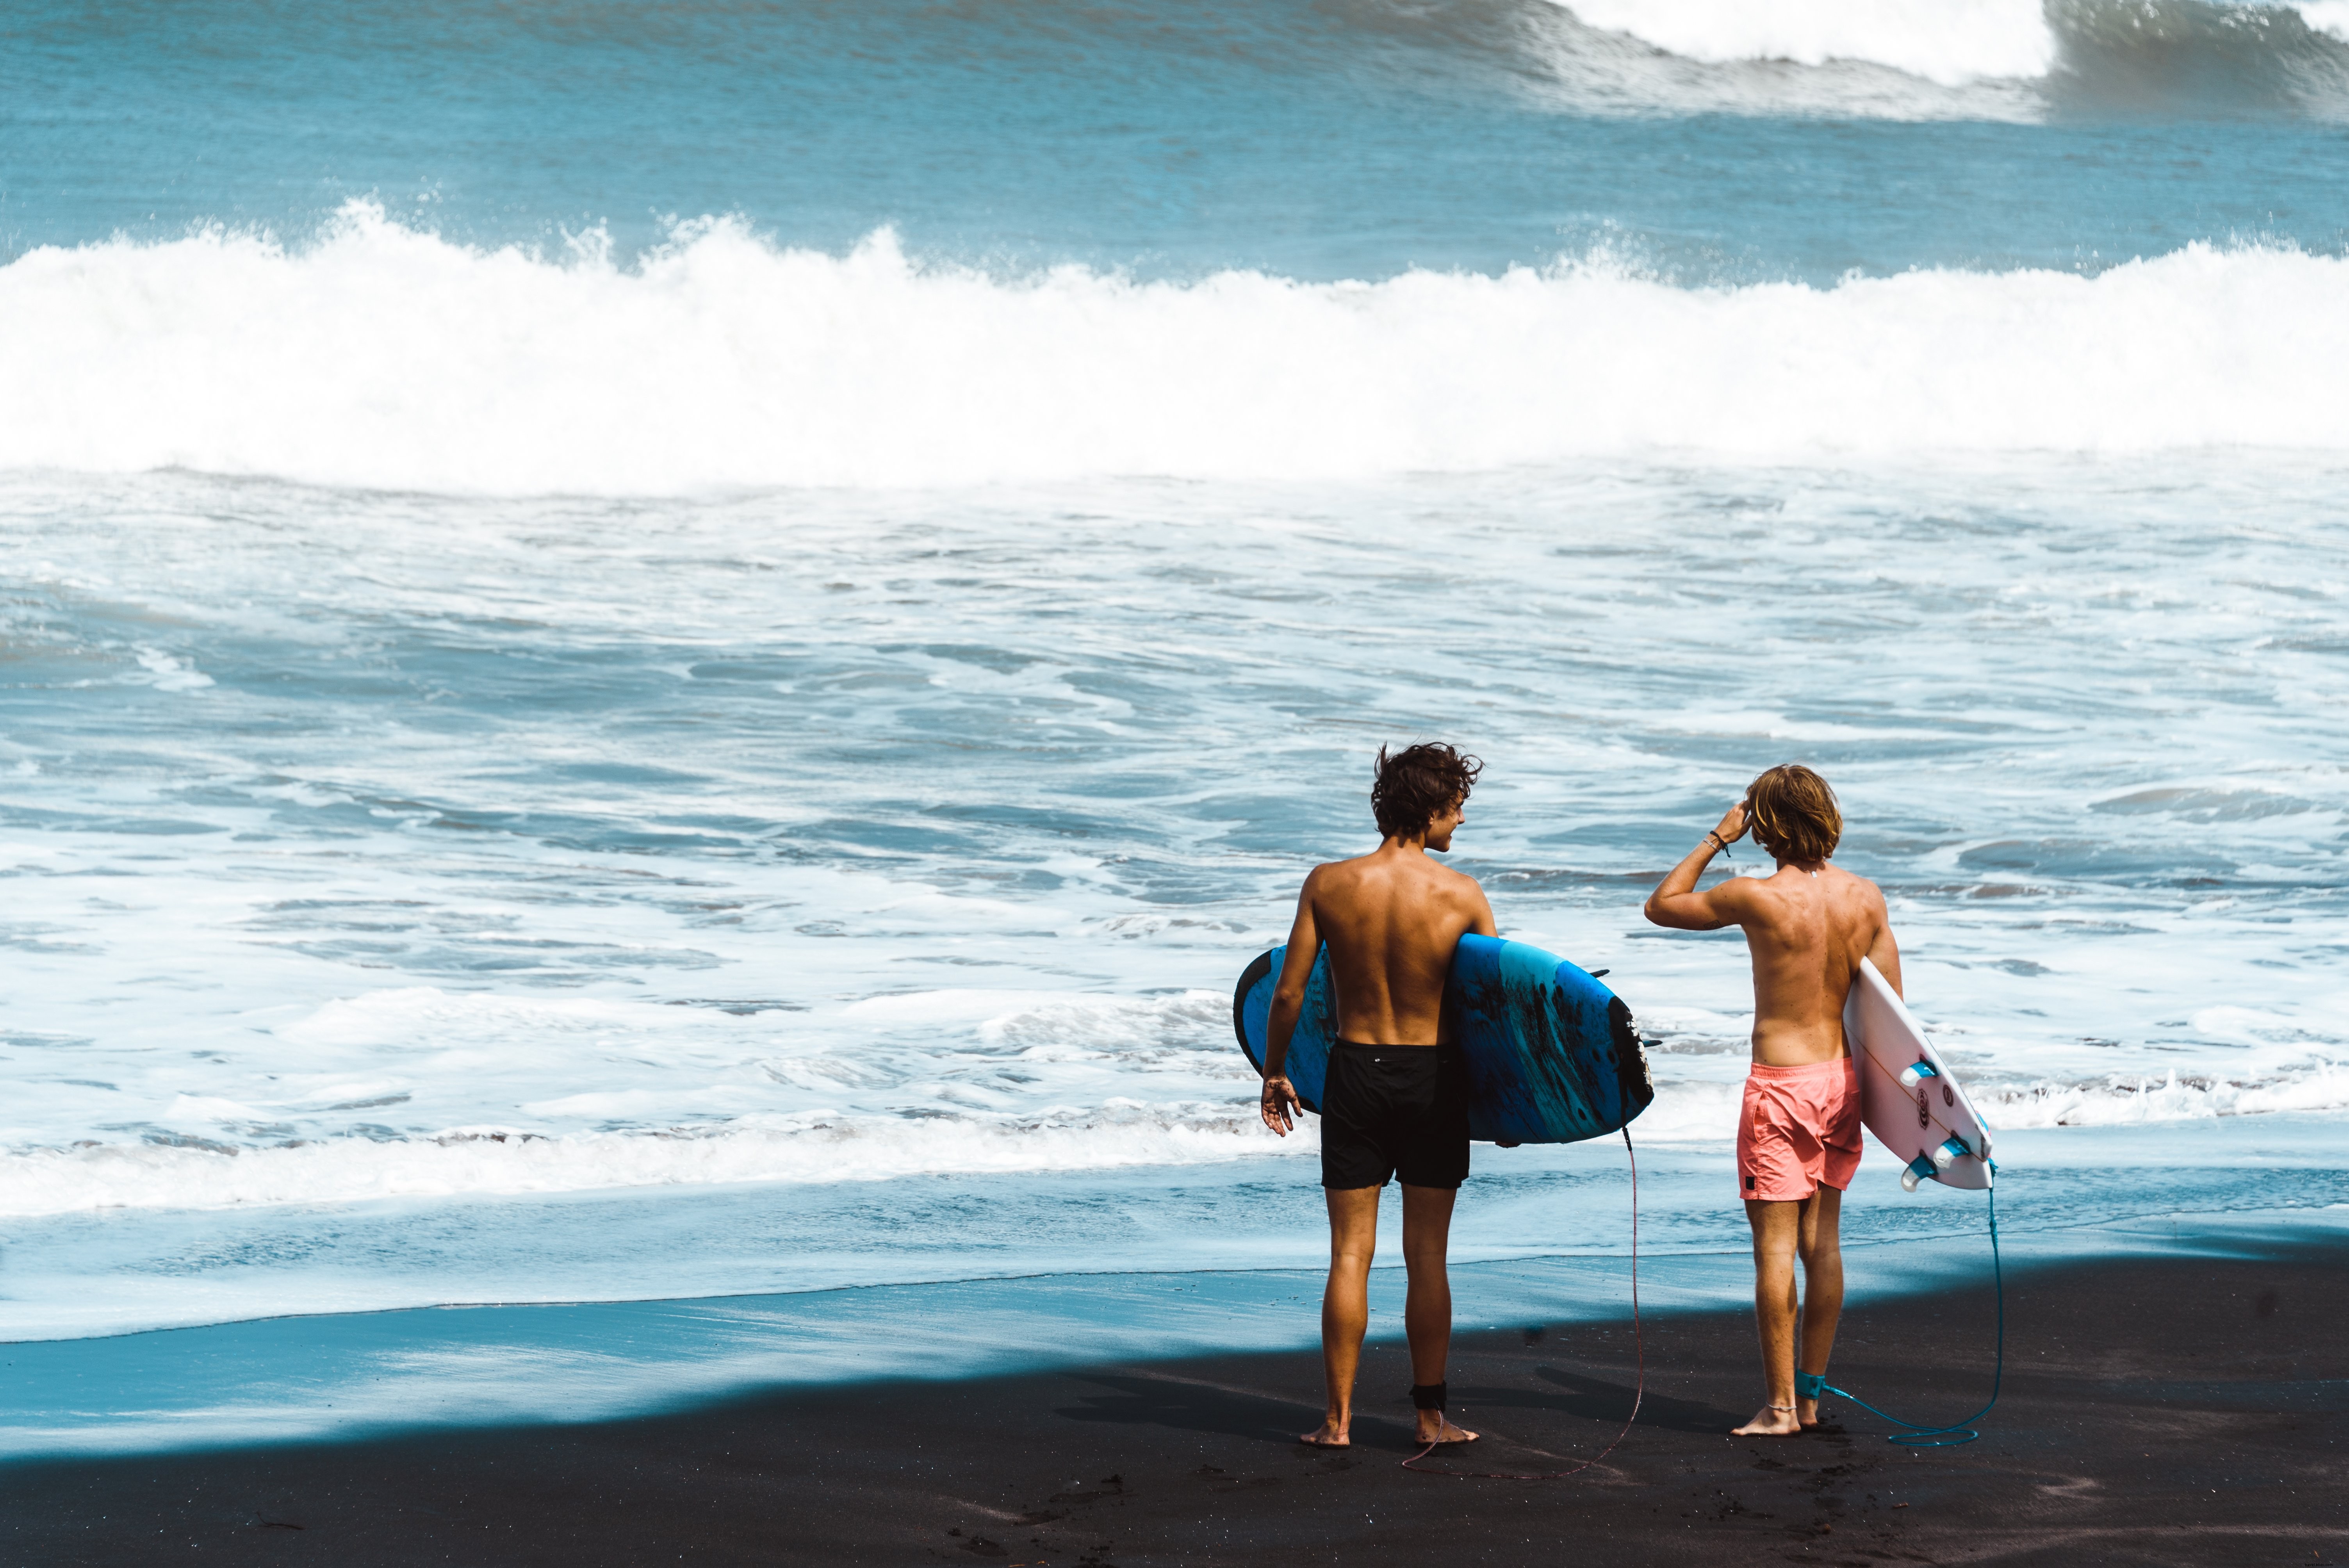 Surfisti in piedi sulla spiaggia foto